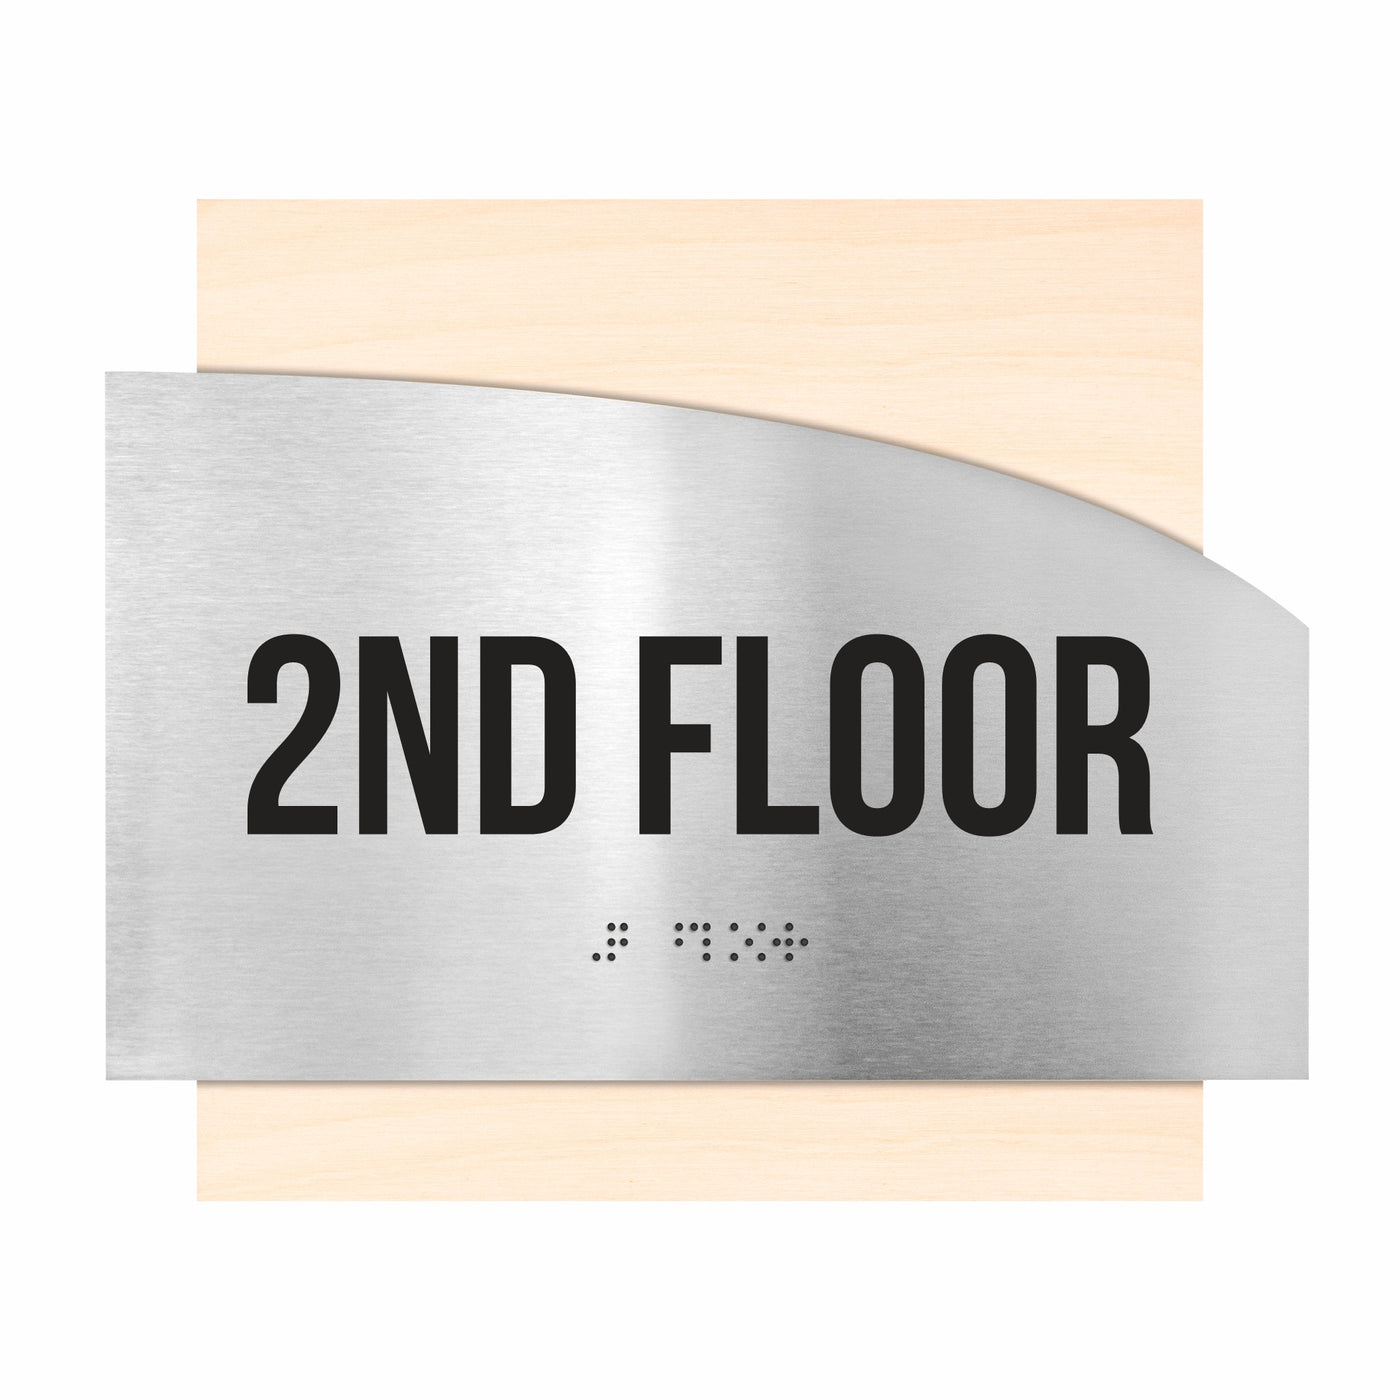 Floor Signs - Steel Sign For 2nd Floor "Wave" Design